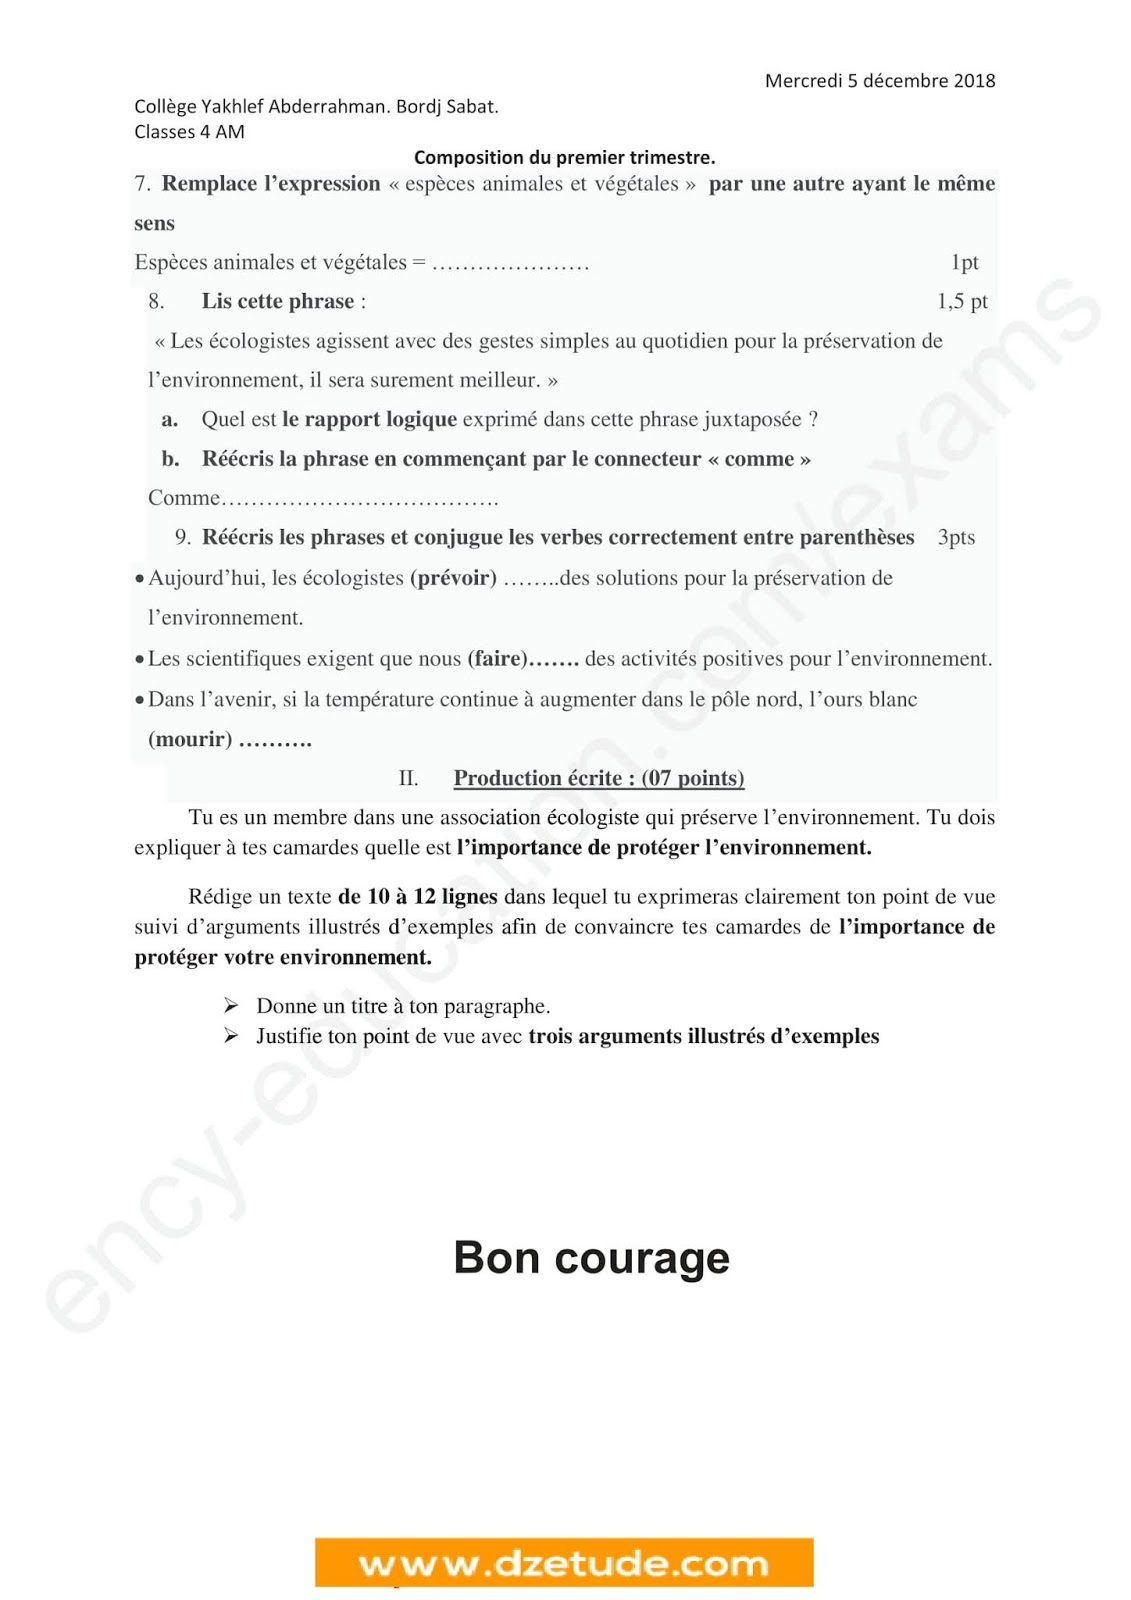 إختبار الفصل الأول في اللغة الفرنسية للسنة الرابعة متوسط - الجيل الثاني نموذج 3